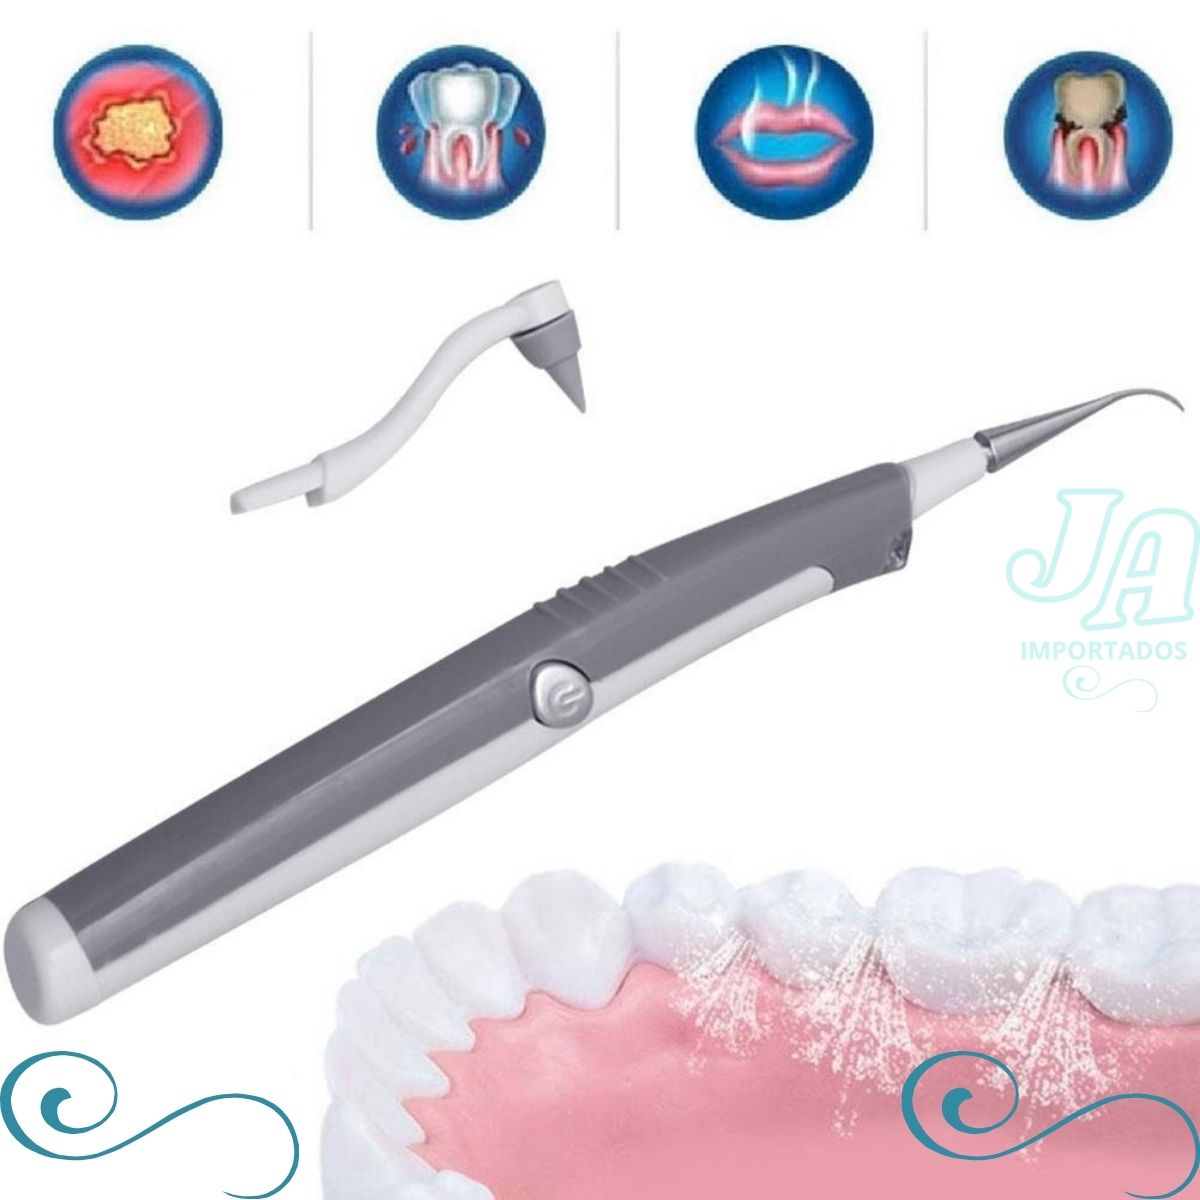 Aparelho de Limpeza Dental Remove Tartaro e Placas Bacterianass  - J.A Importados